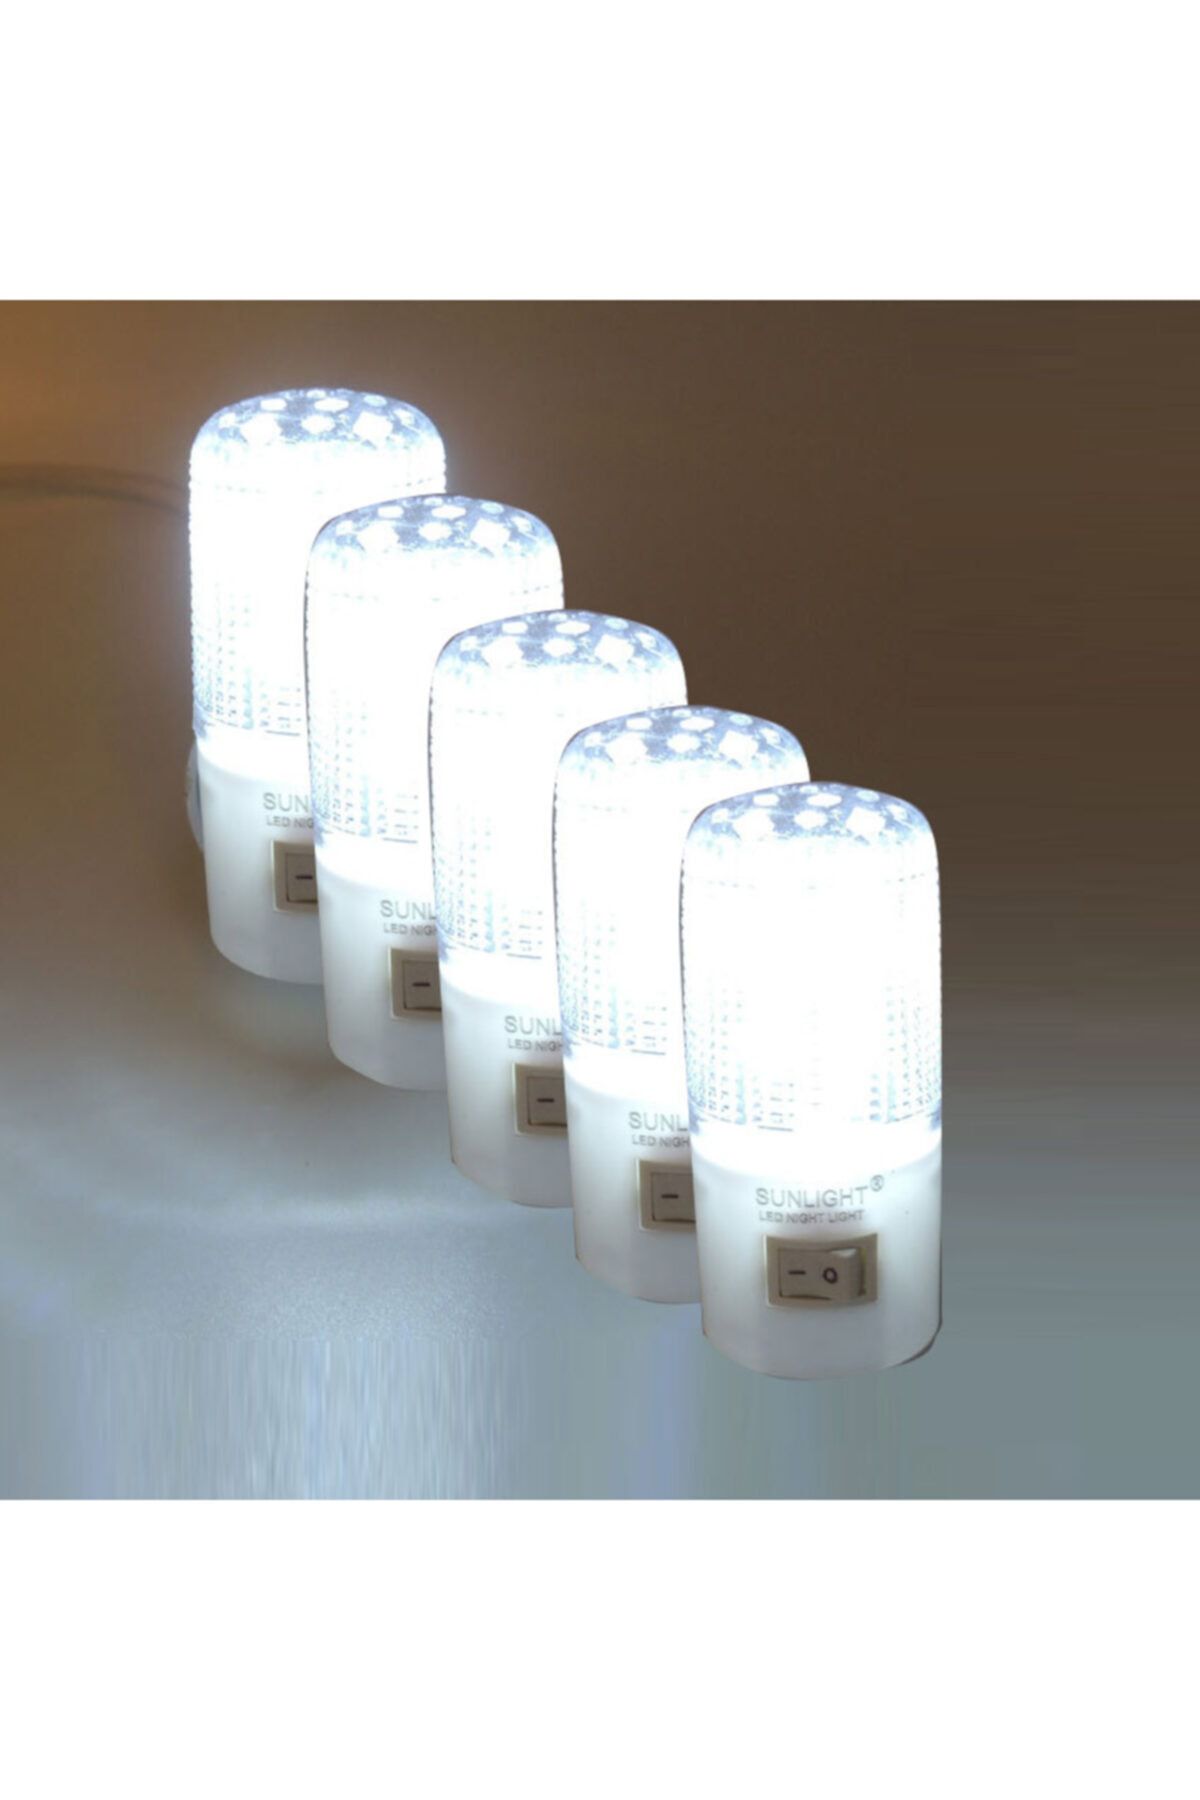 Sunlight Kısa Led Gece Lambası 0,5w Tasarruflu Işıklı Fişli Düğmeli 5 Adet Beyaz